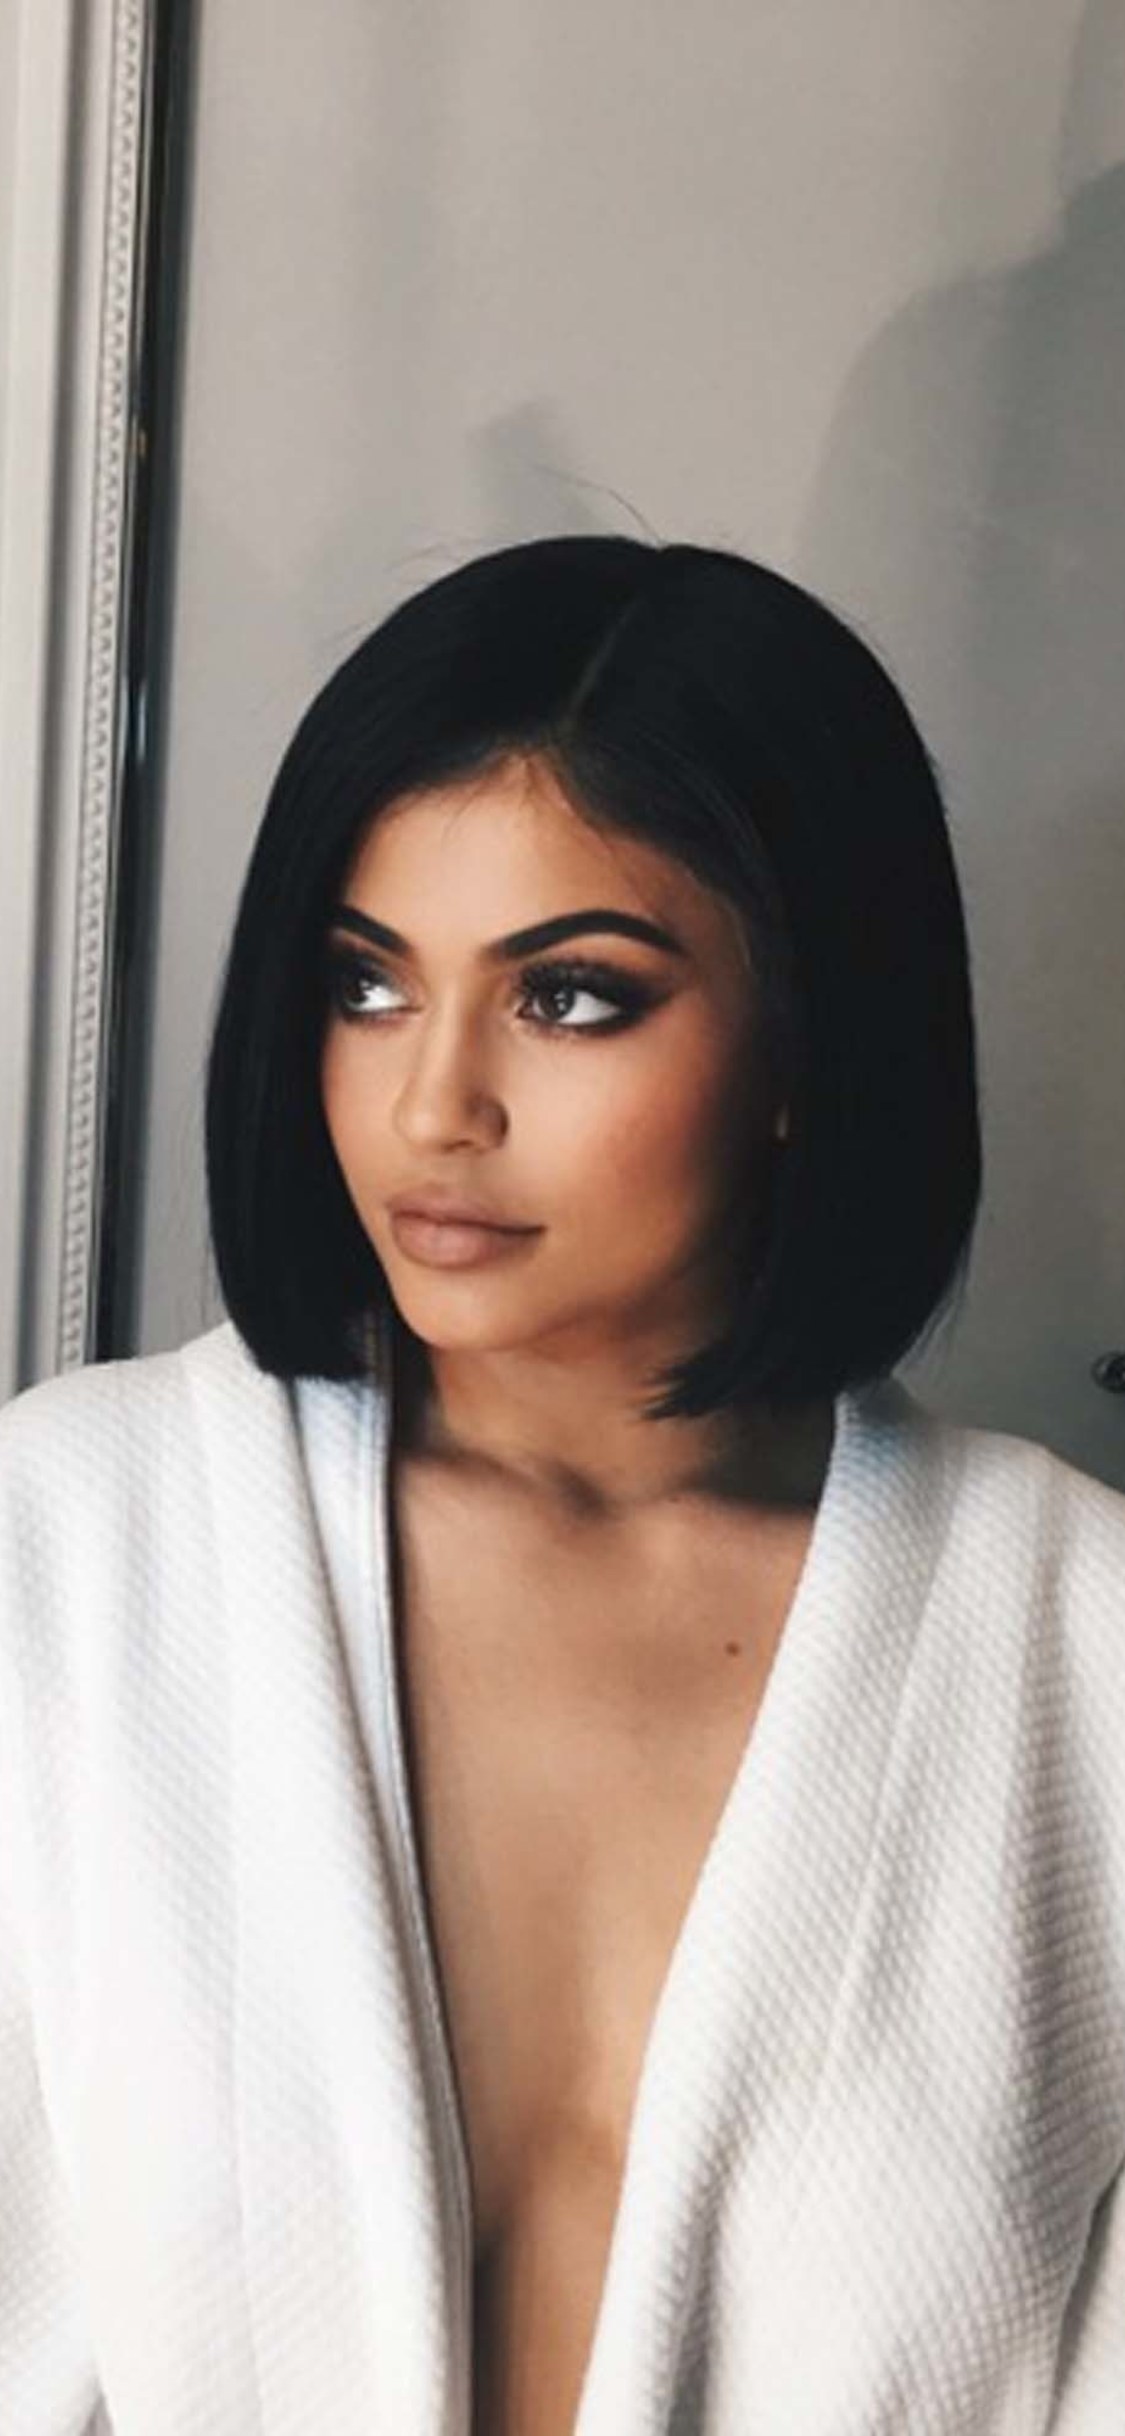 Kylie Jenner Short Black Hair 2017 - Kylie Jenner Black Short Hair , HD Wallpaper & Backgrounds